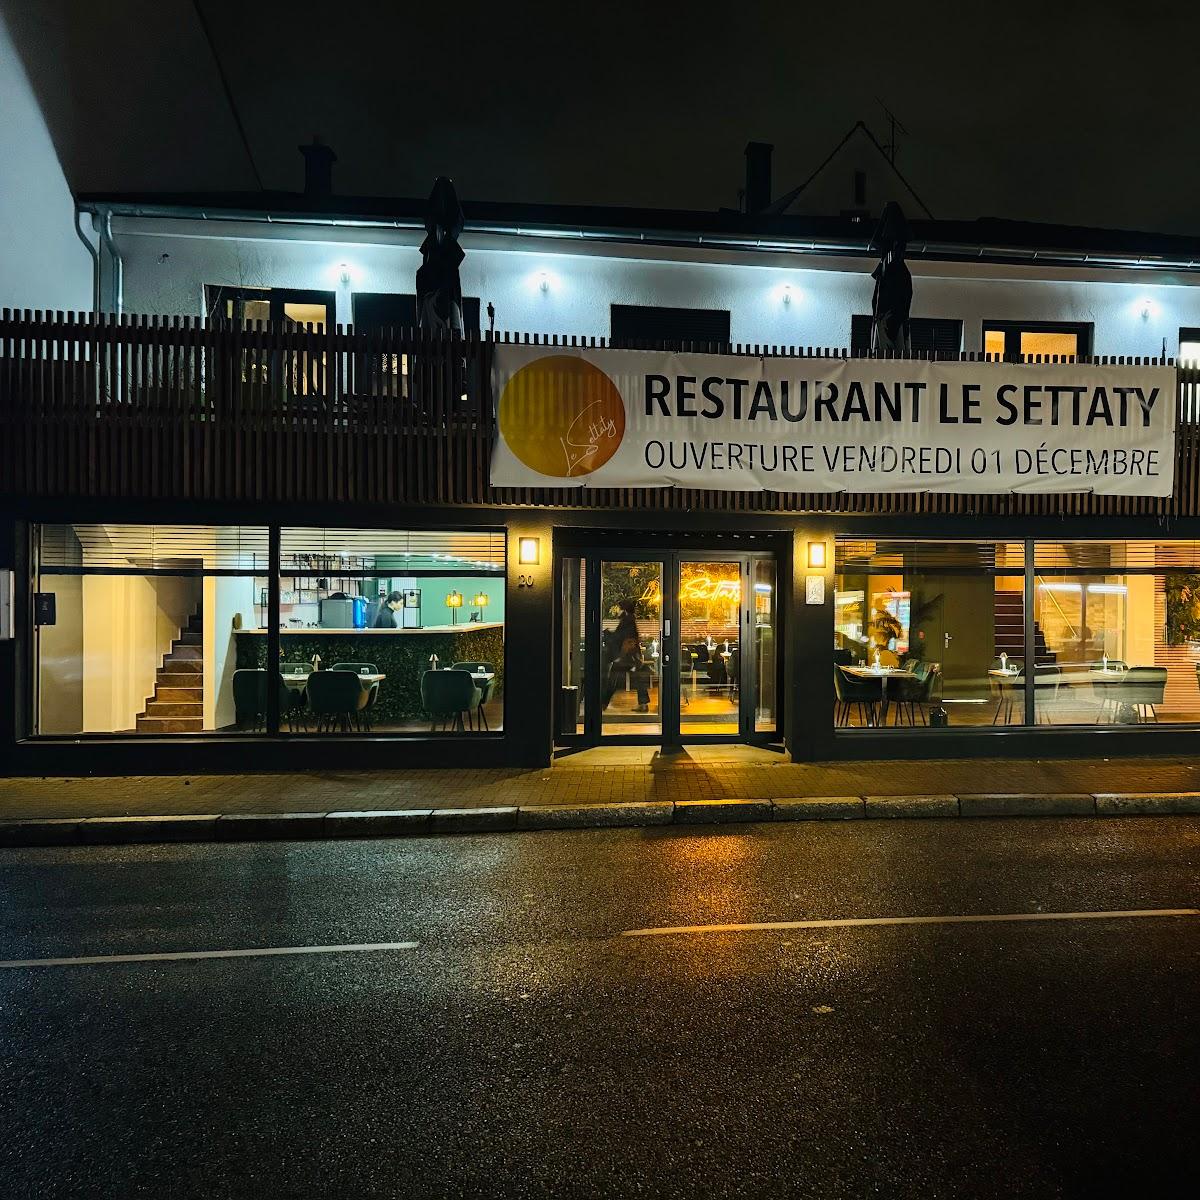 Restaurant "Le Settaty" in Bischheim